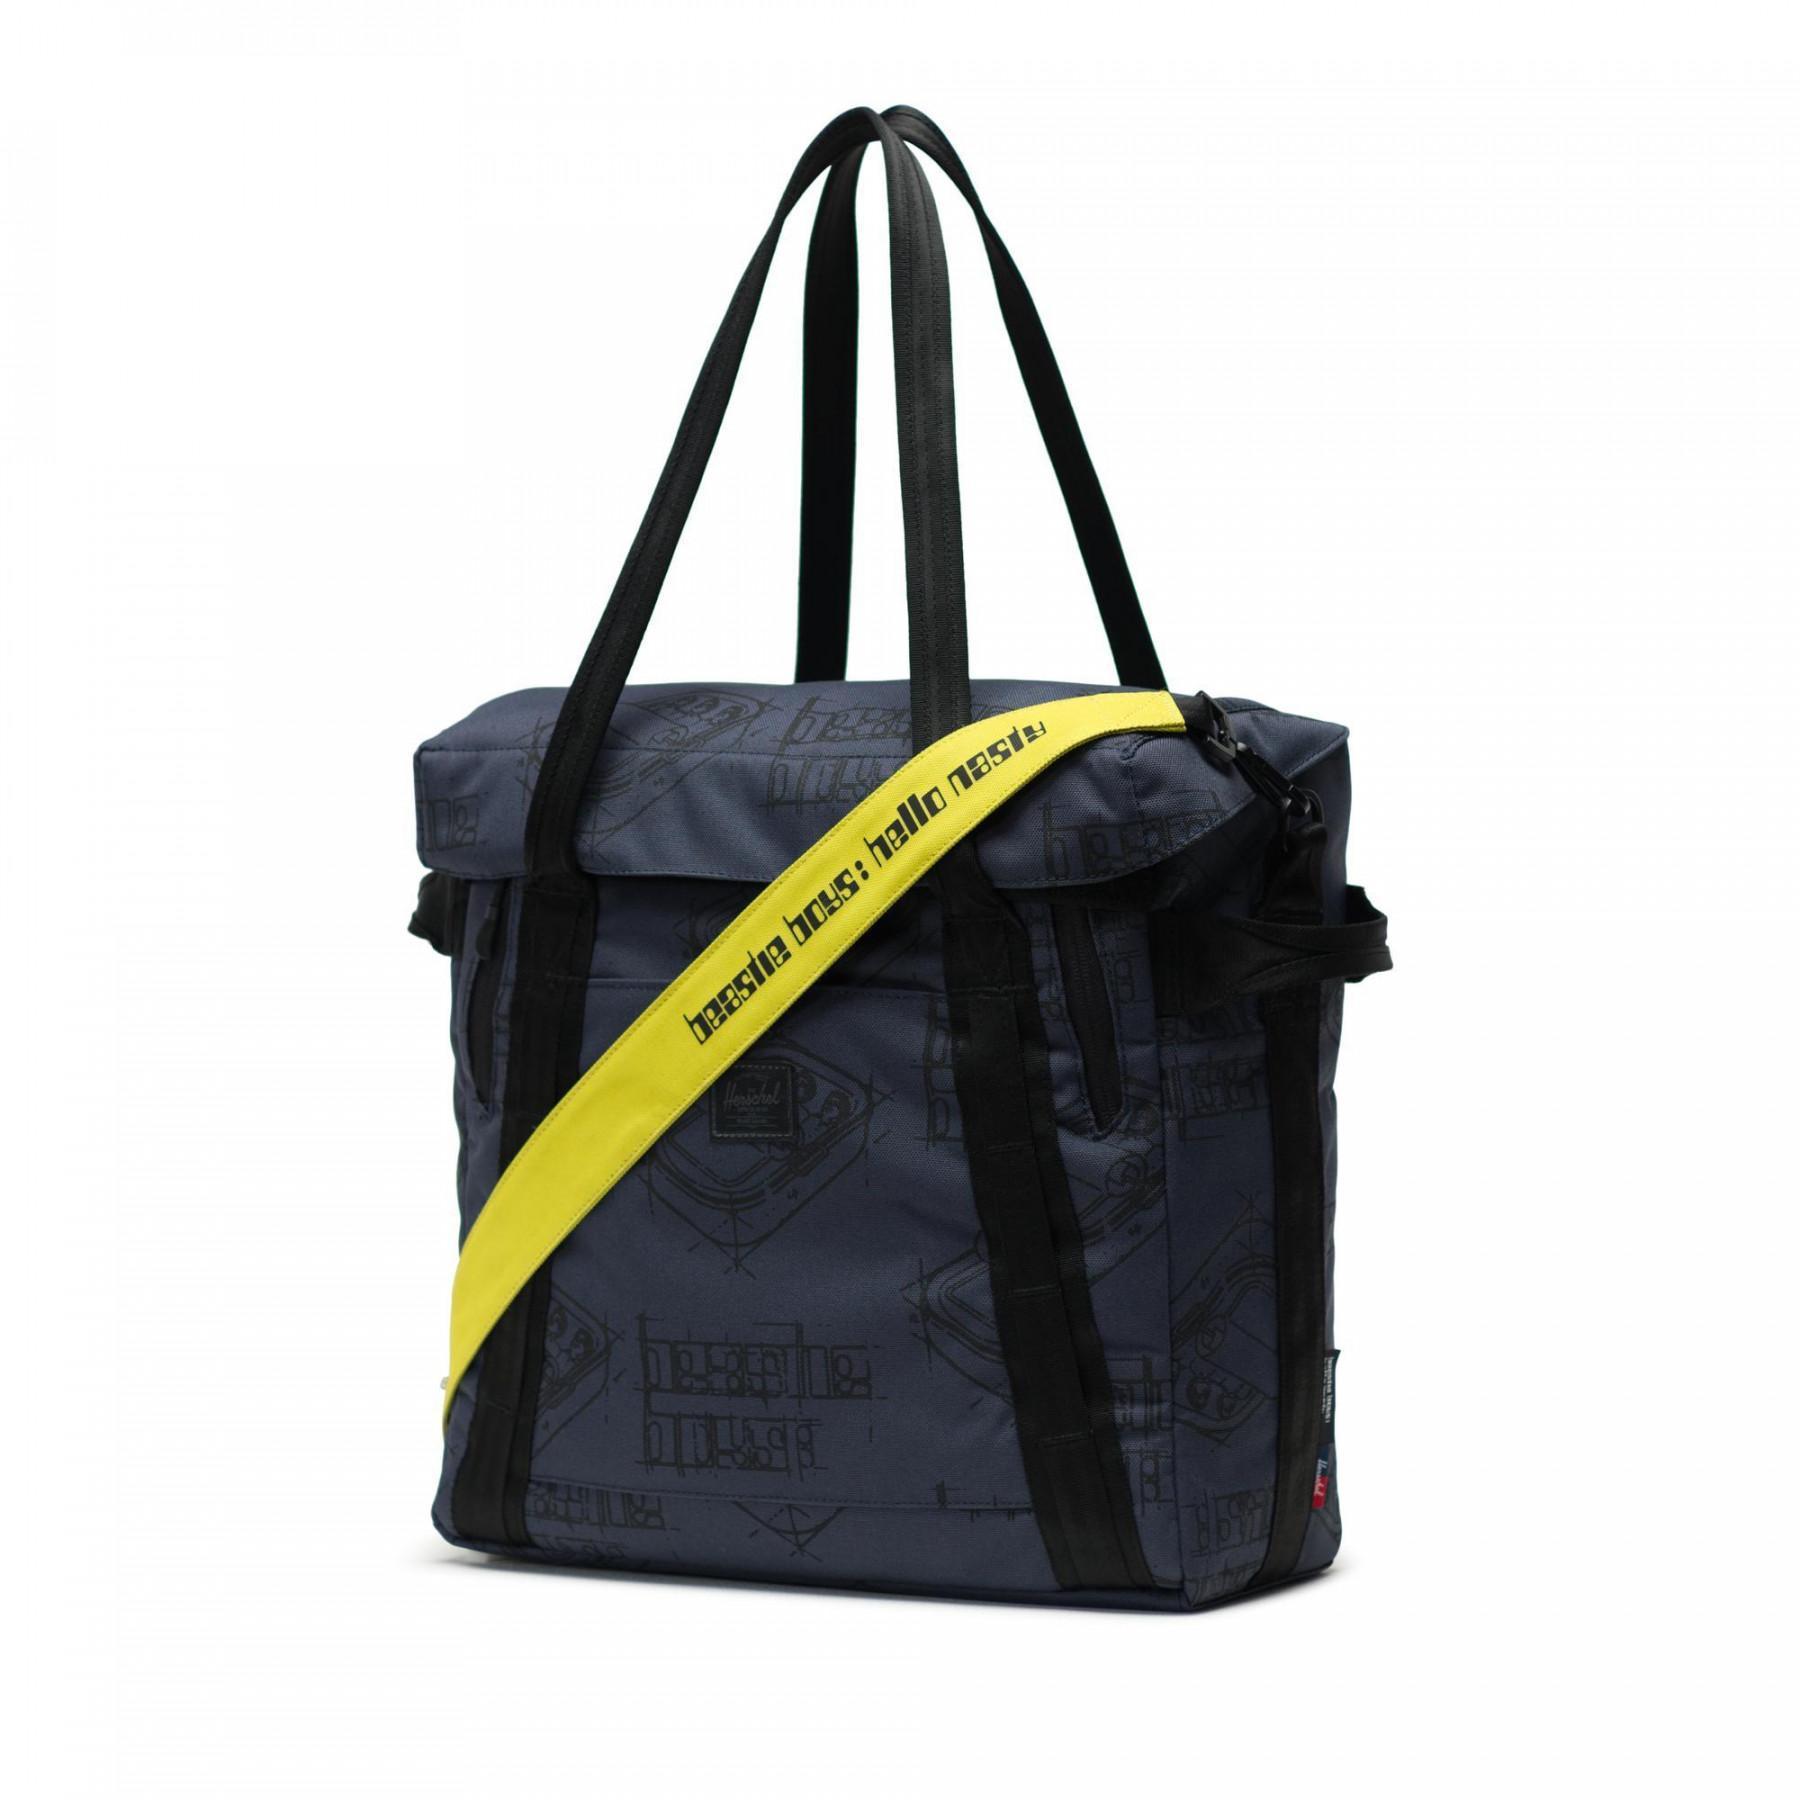 Shoulder bag Herschel recorg bag